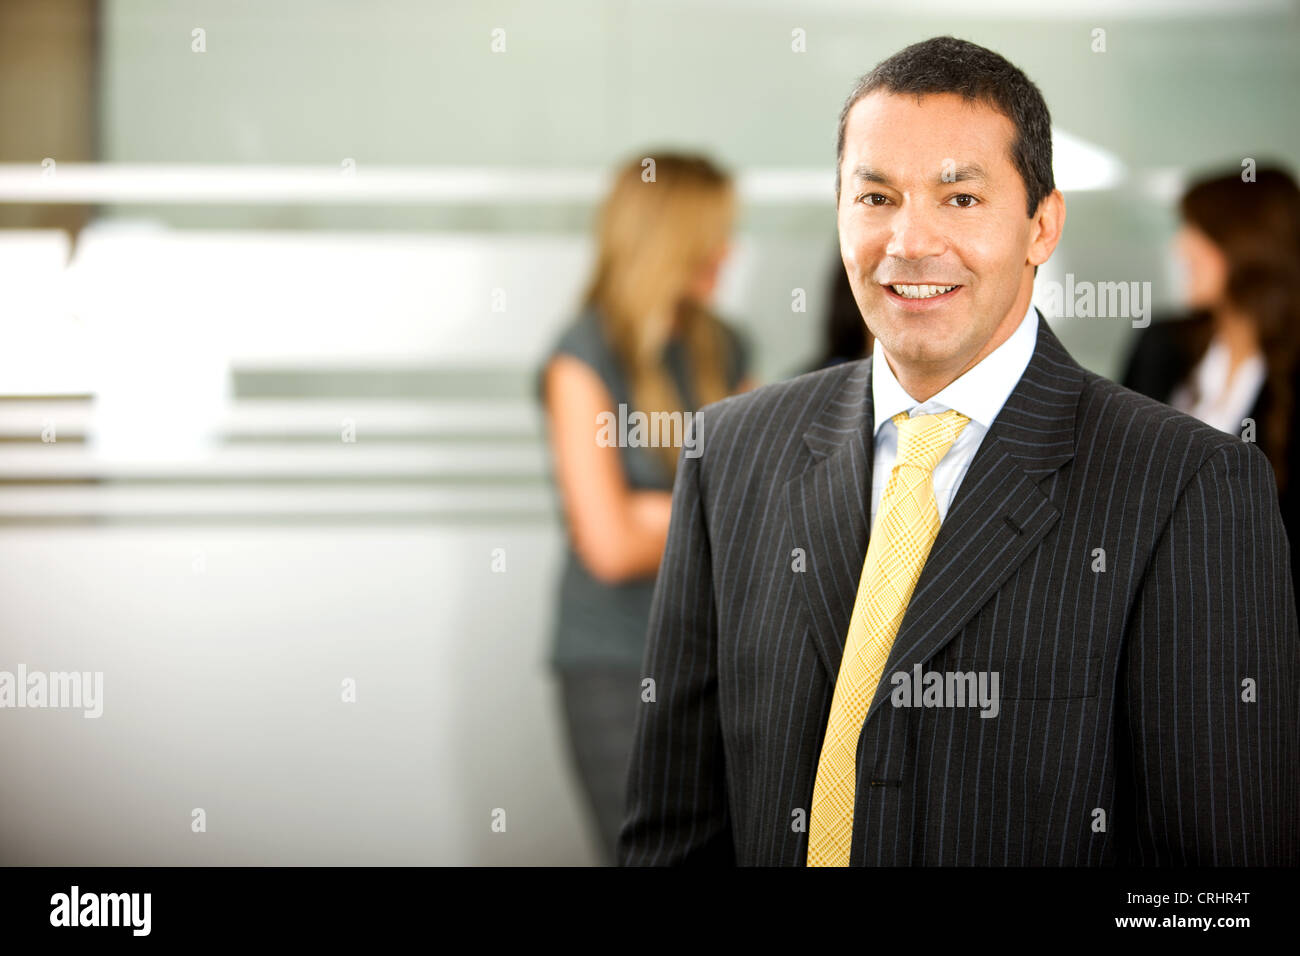 Empresario con traje negro con corbata amarilla, sonriendo Foto de stock